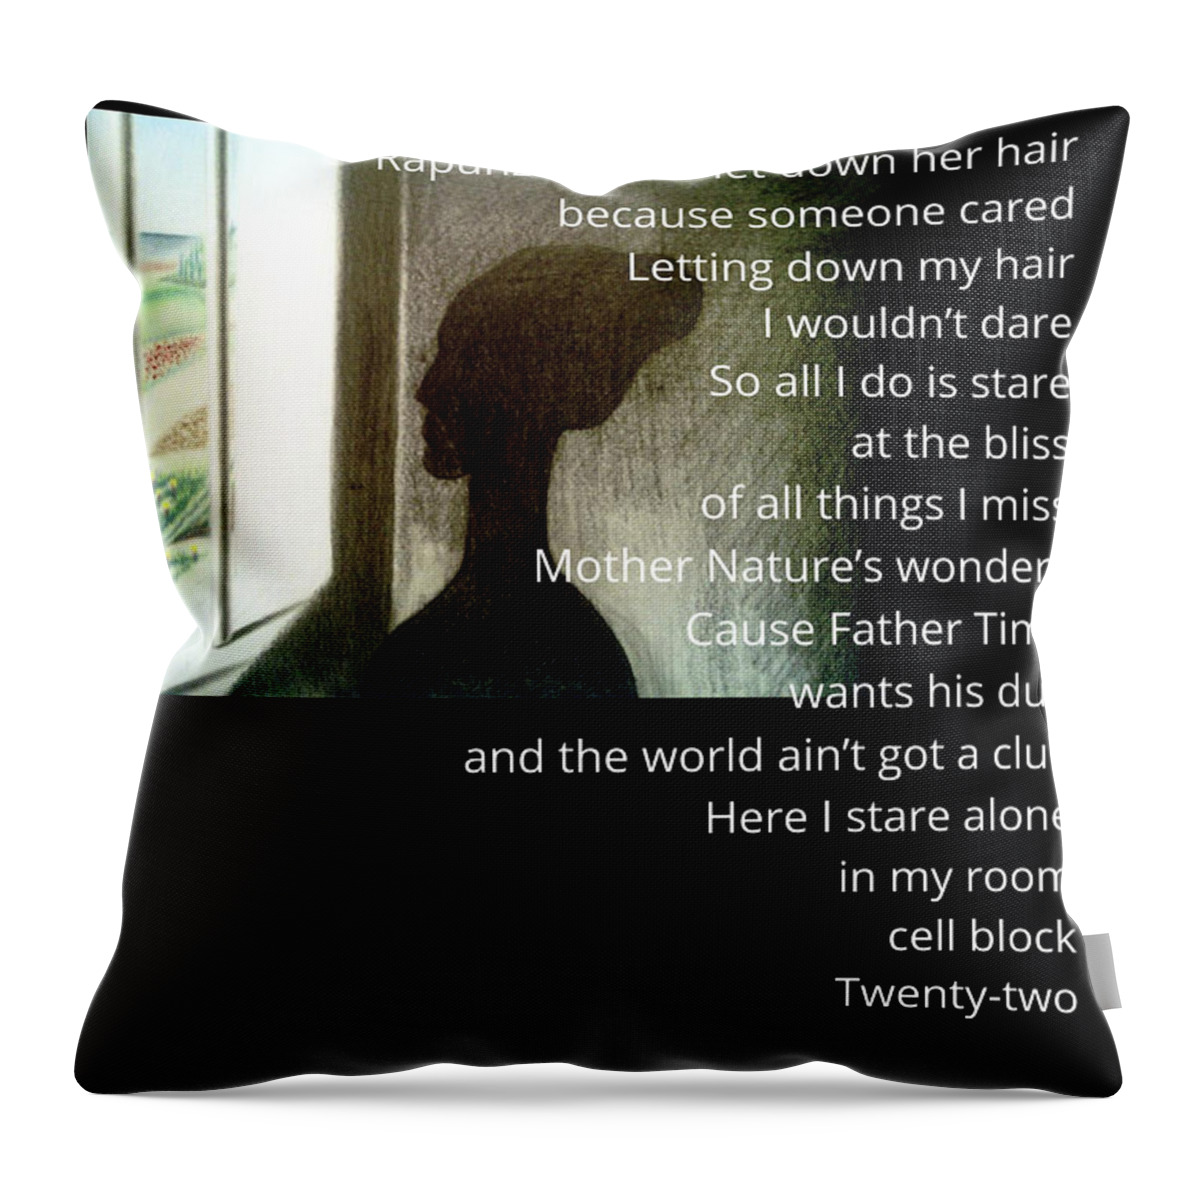 Black Art Throw Pillow featuring the digital art Mprisond Paintoem by Donald C-Note Hooker